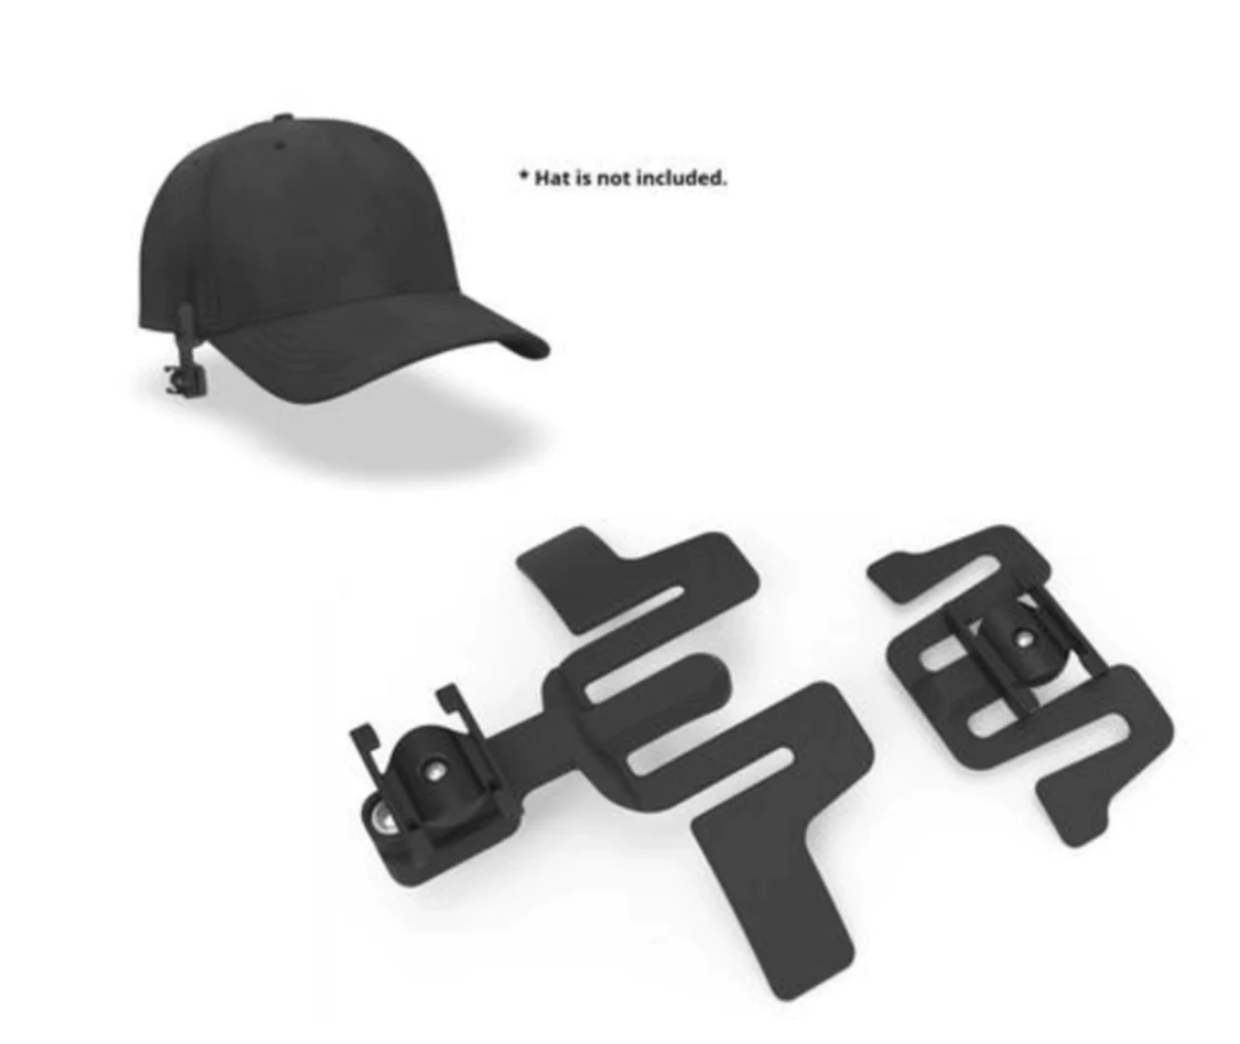 5x original LST Cap-Halter Schirmmützenhalterung for Baseballcaps Hats